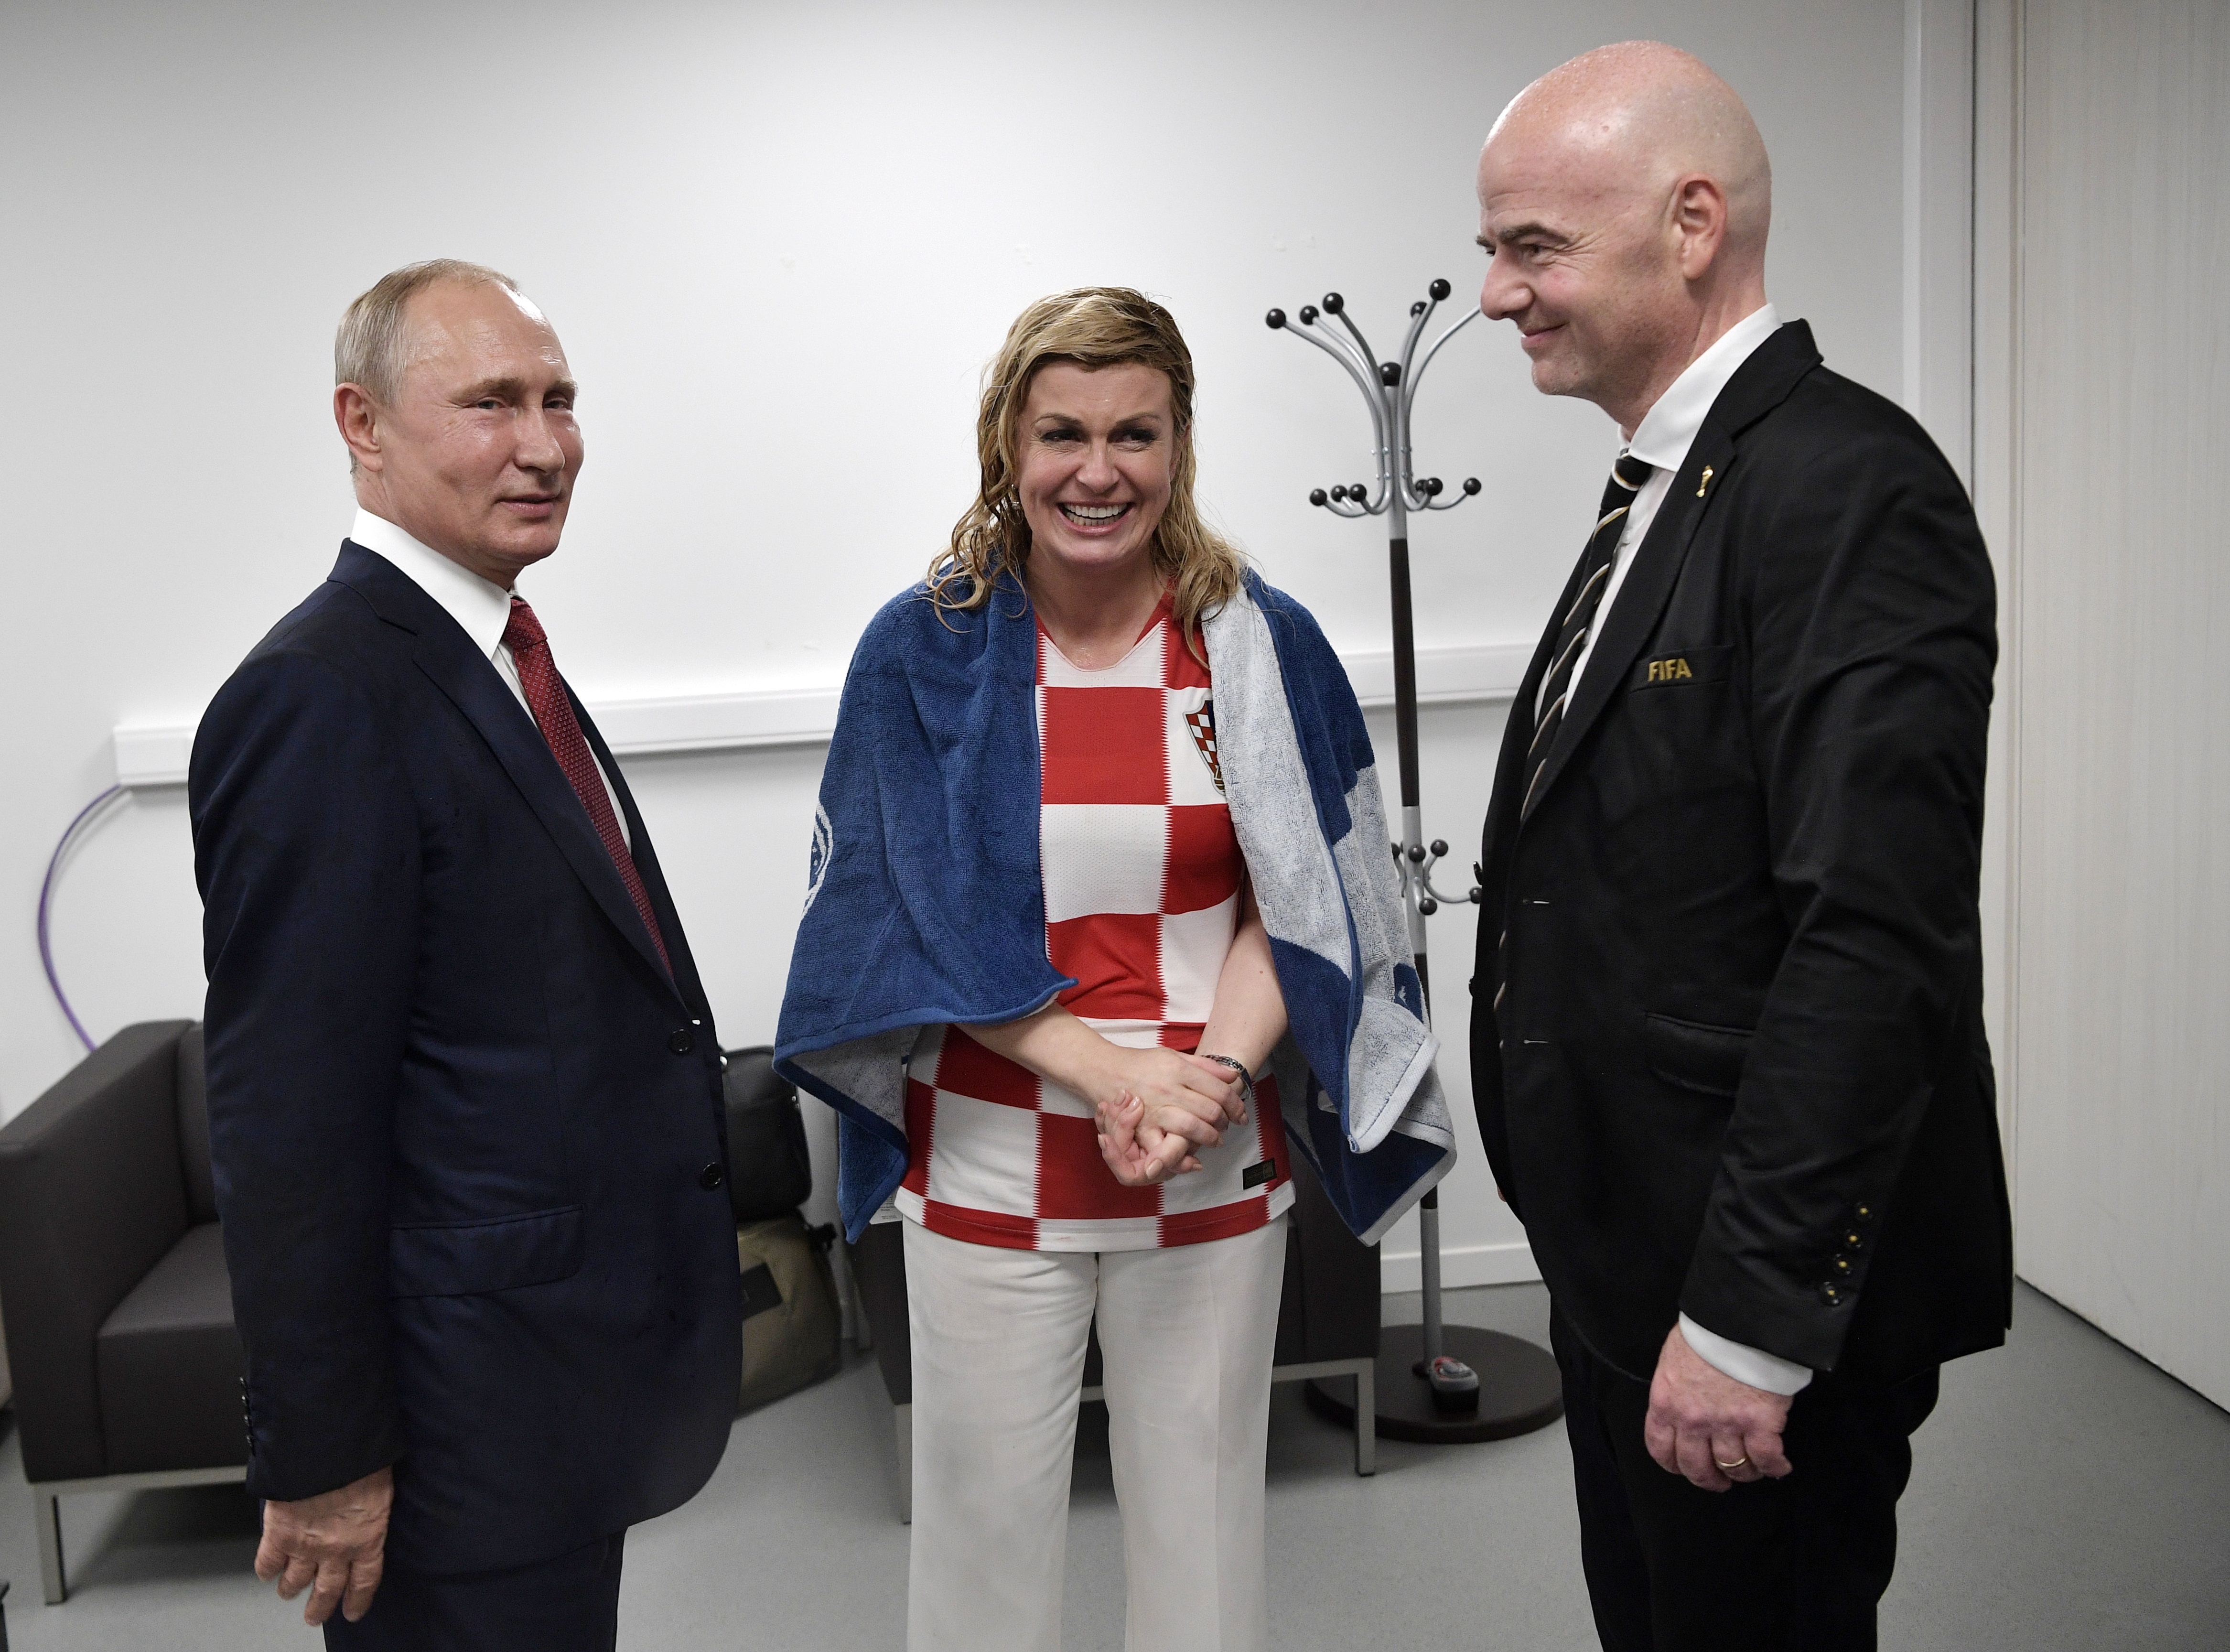 Макрон и хърватската президентка Колинда Грабар-Китарович останаха под дъжда и се измокриха до кости, докато руският президент Владимир Путин бе удобно покрит с чадър. Изданията в Европа пишат, че двамата са спечелили симпатиите по време на тази невероятна сцена. Хърватската президентка е запазила търпението си и усмивката си и е продължила да поздравява и прегръща футболистите въпреки проливния дъжд. Подобна е била и реакцията на Макрон, за когото изданията на шега пишат, че и той като националите е "намокрил фланелката си". Коментатори пък критикуват Путин за проява на неелегатност точно в този момент и смятат, че той е трябвало бързо да отиде с чадъра до хърватската си колежка и да я предпази от дъжда.